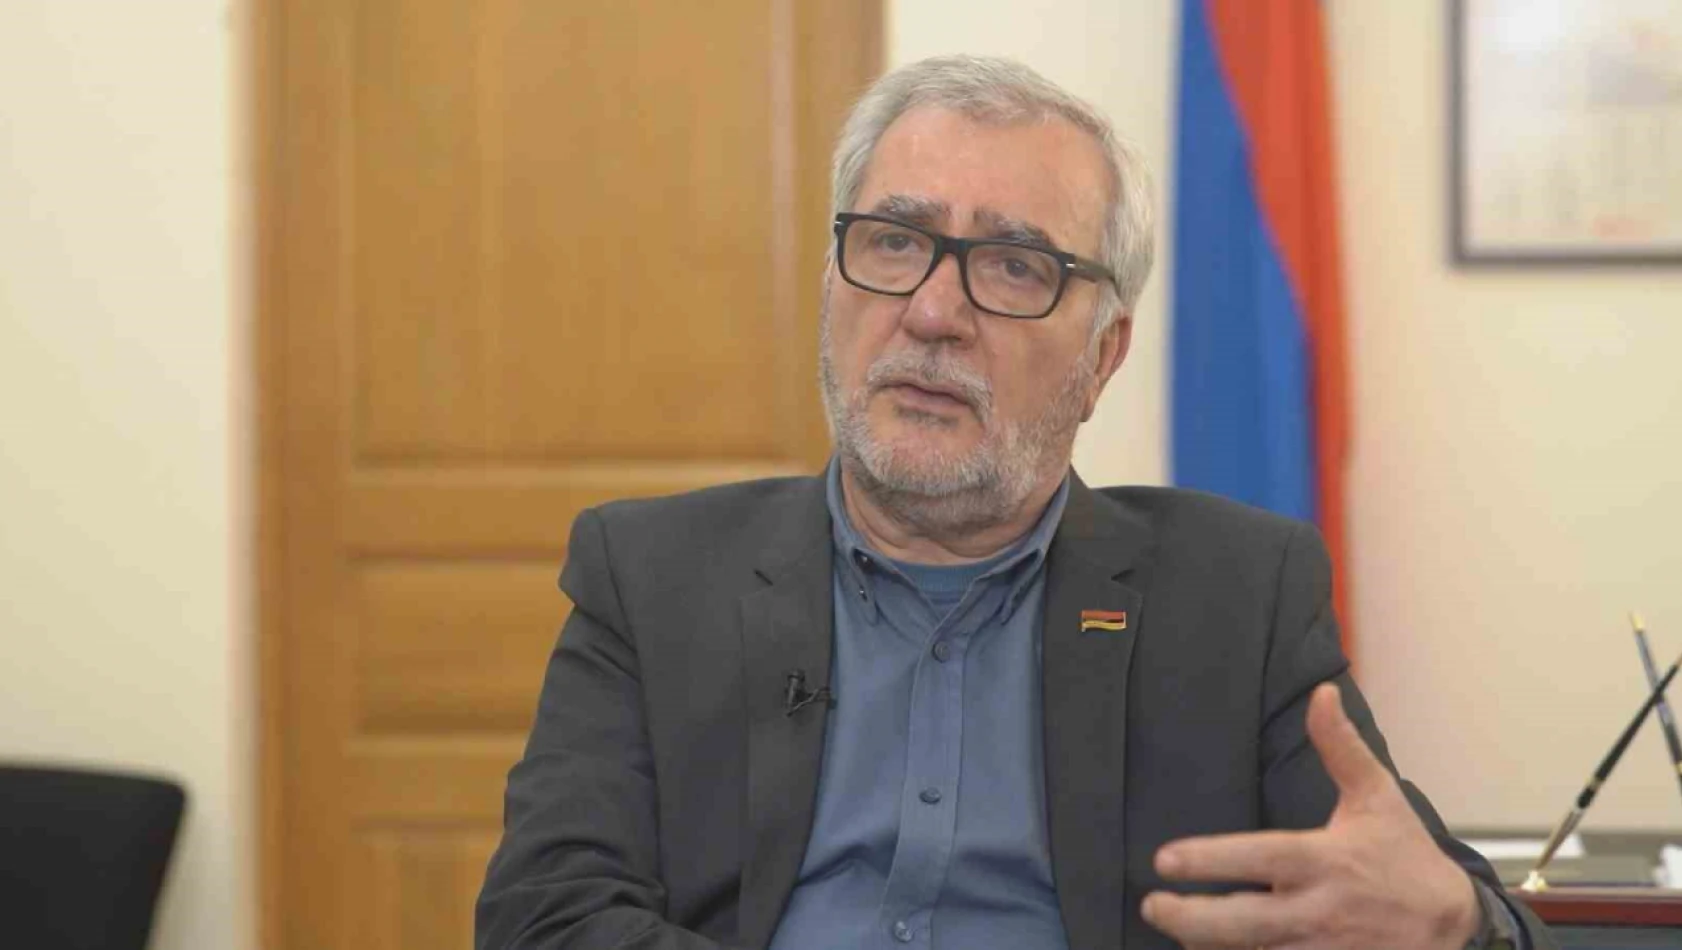 Ermeni yetkililerden KGAÖ yorumu: 'Ermenistan savunma alanında daha katmanlı bir yapıya geçmeye yönelik stratejik bir karar aldı'